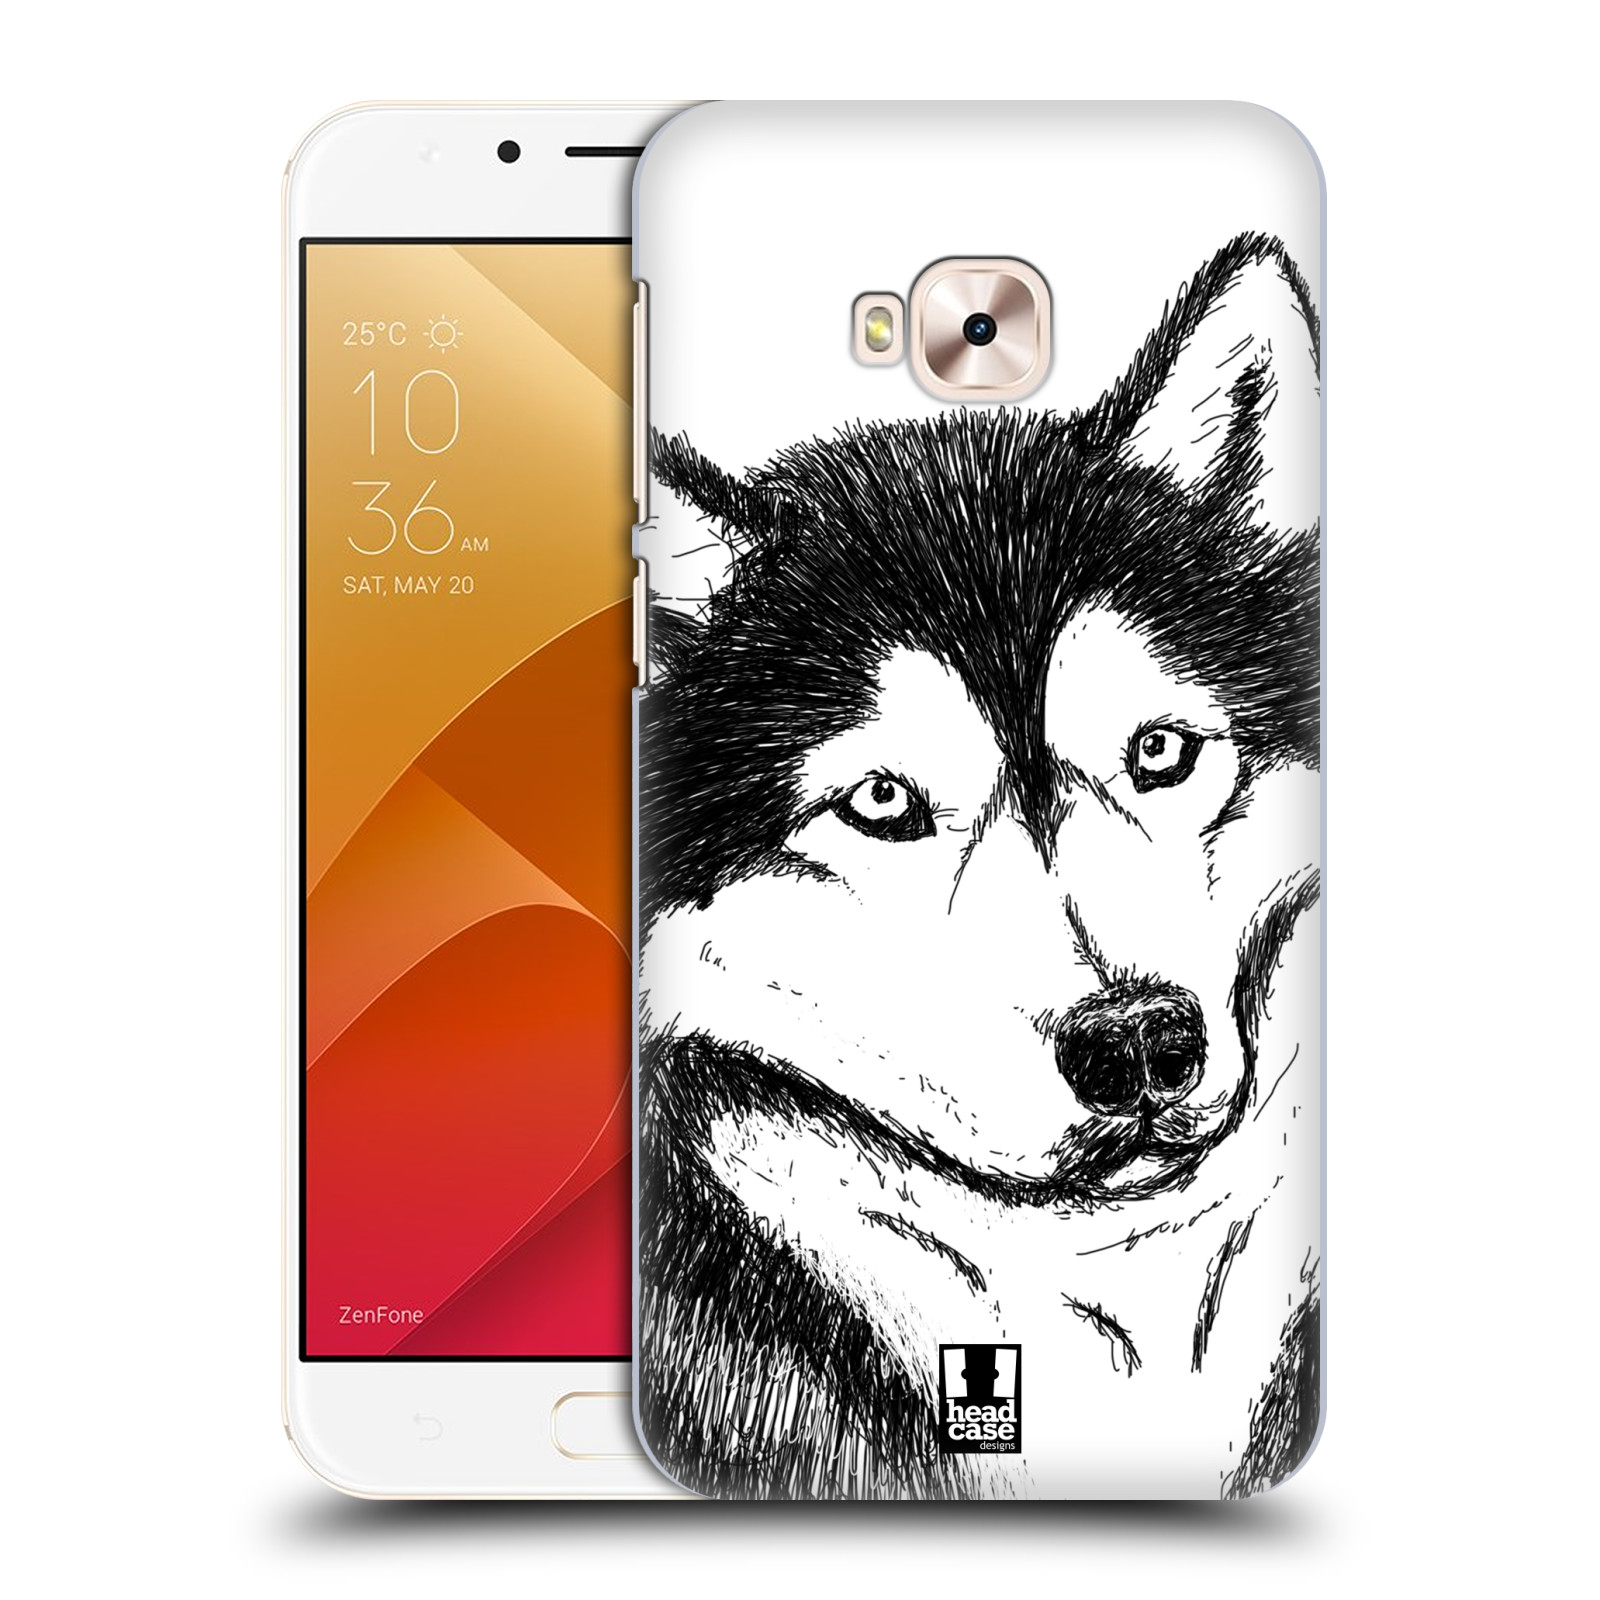 HEAD CASE plastový obal na mobil Asus Zenfone 4 Selfie Pro ZD552KL vzor Kreslená zvířátka černá a bílá pes husky